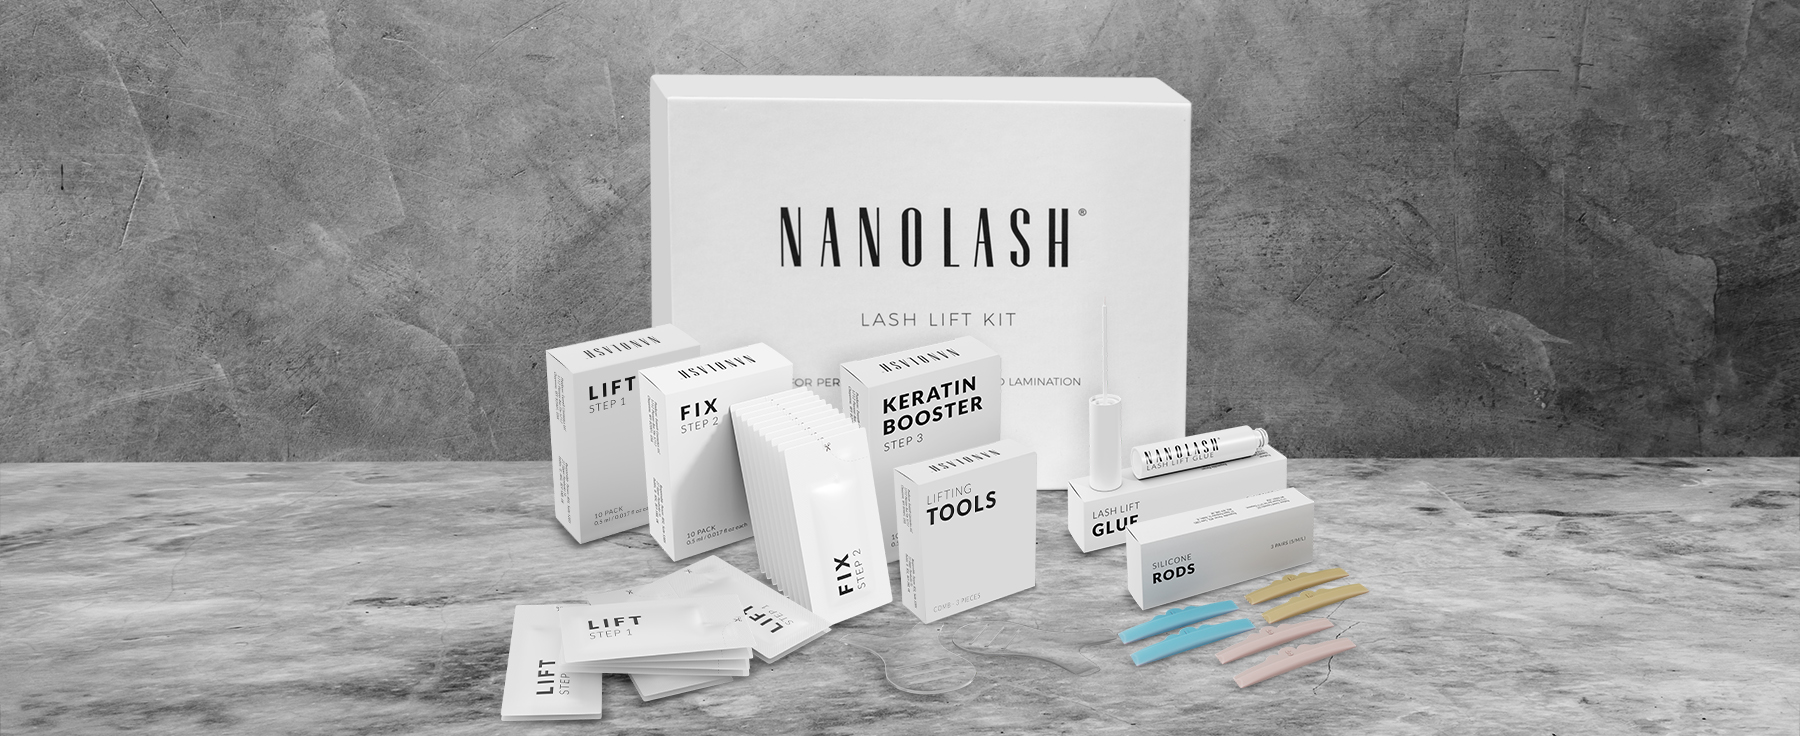 Dags För Vackra Och Långa Ögonfransar! Transformera Ditt Utseende med Nanolash Lash Lift Kit!